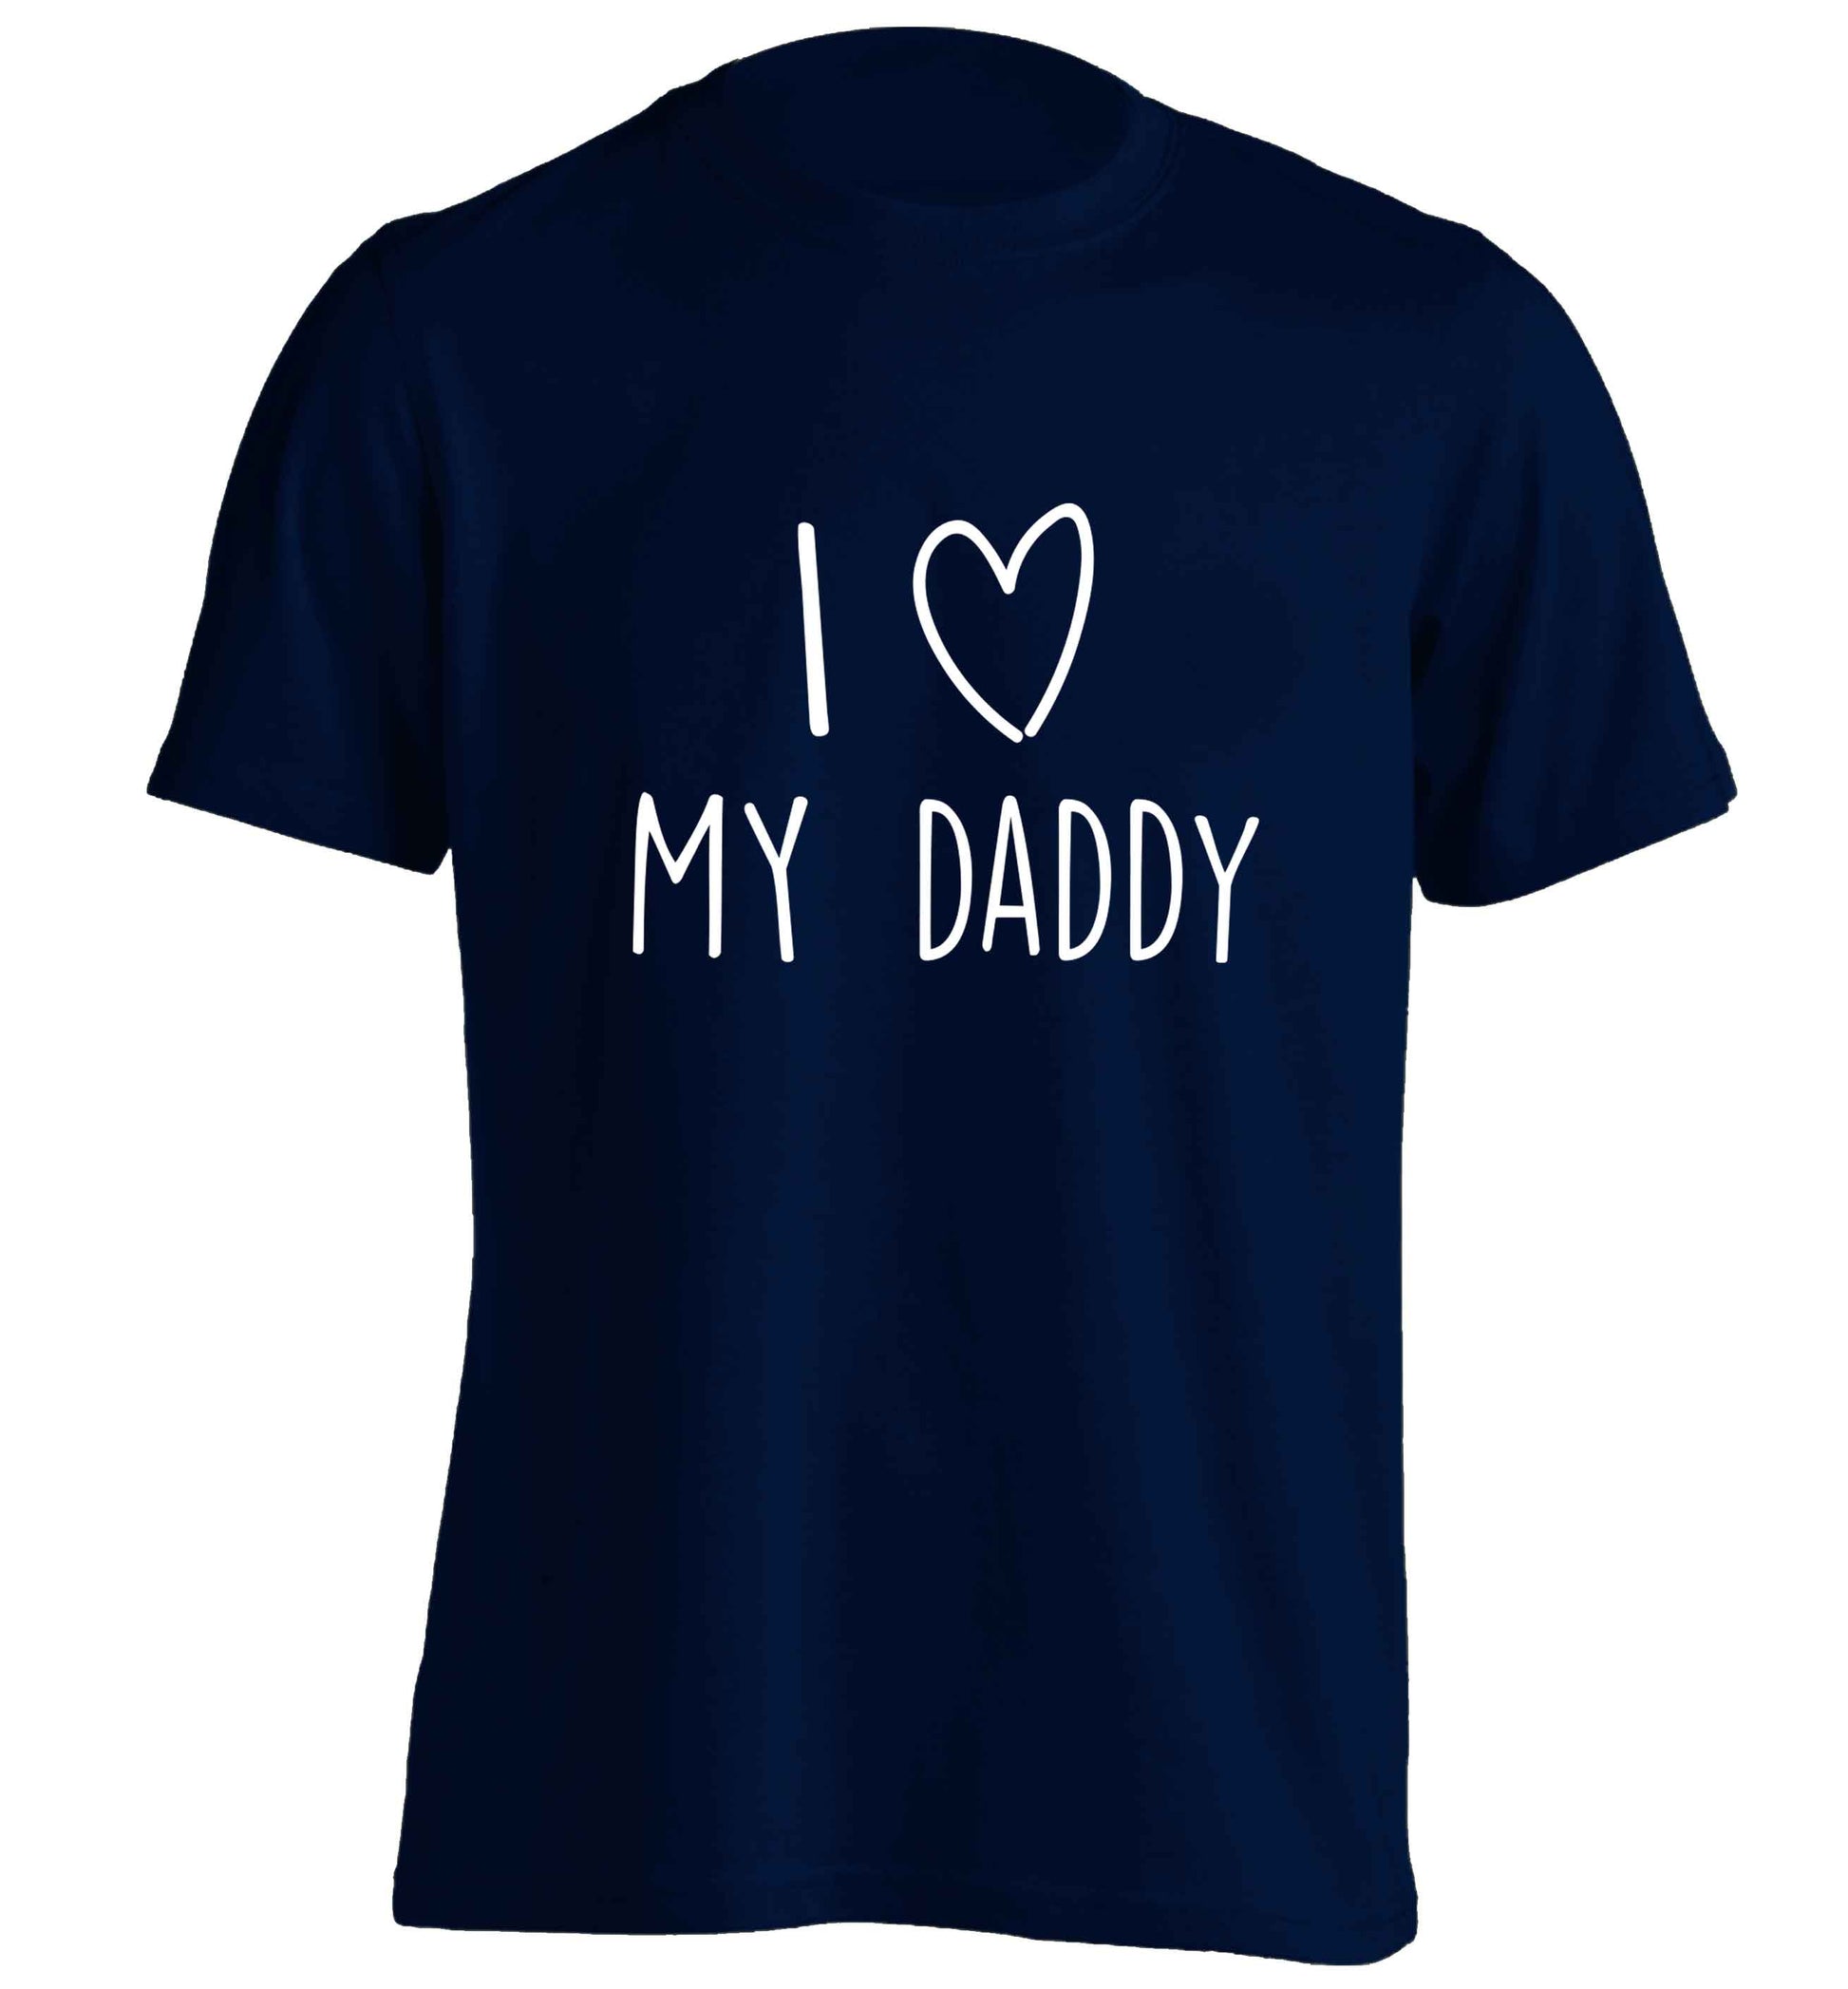 I love my daddy adults unisex navy Tshirt 2XL